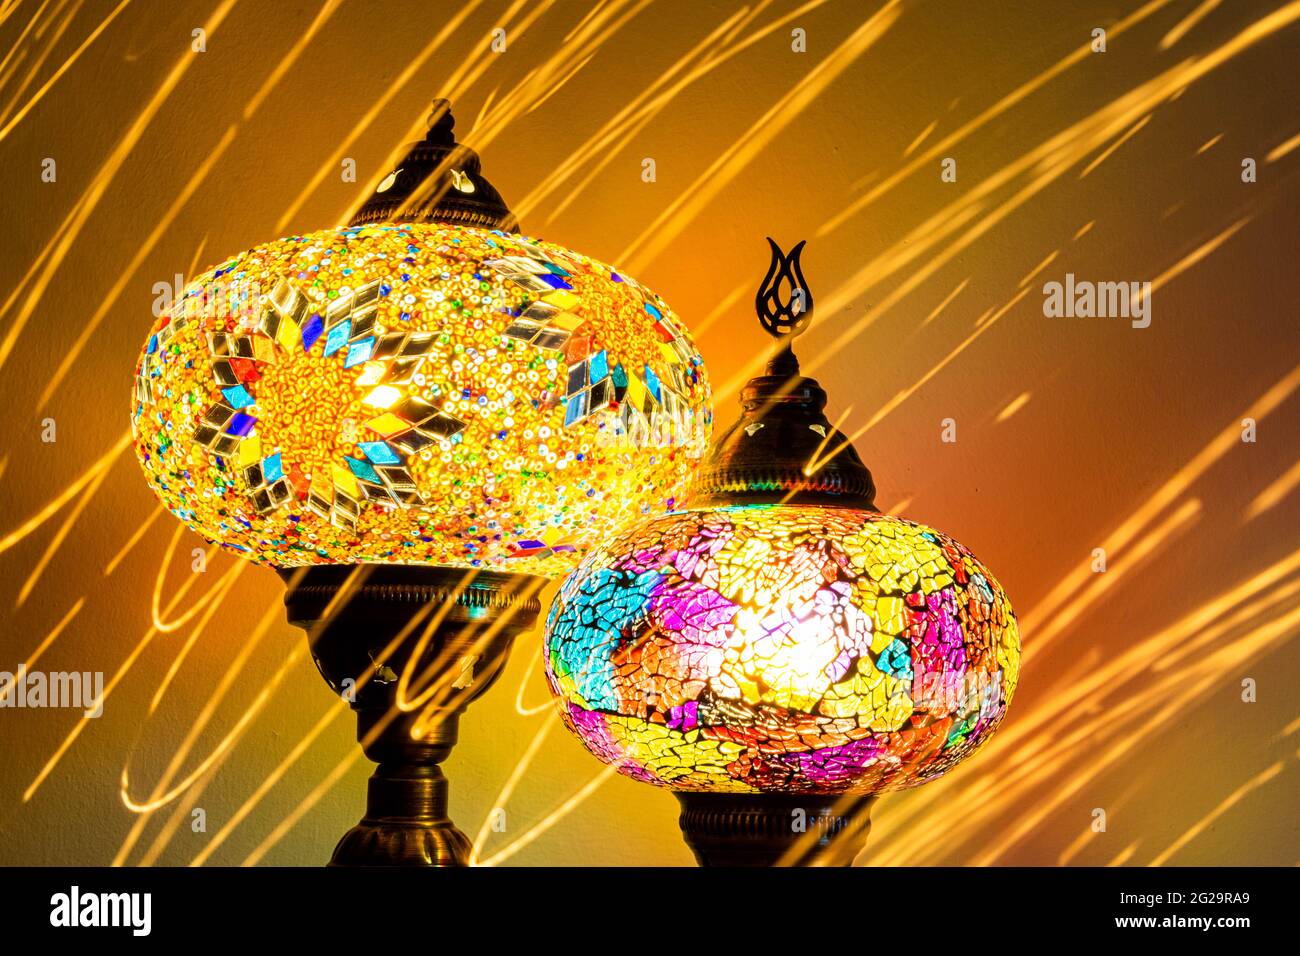 Lampes en verre taillé artisanales turques illuminées. Vibrante et colorée avec des flashes, des traînées et des traînées uniques. Antiq Banque D'Images